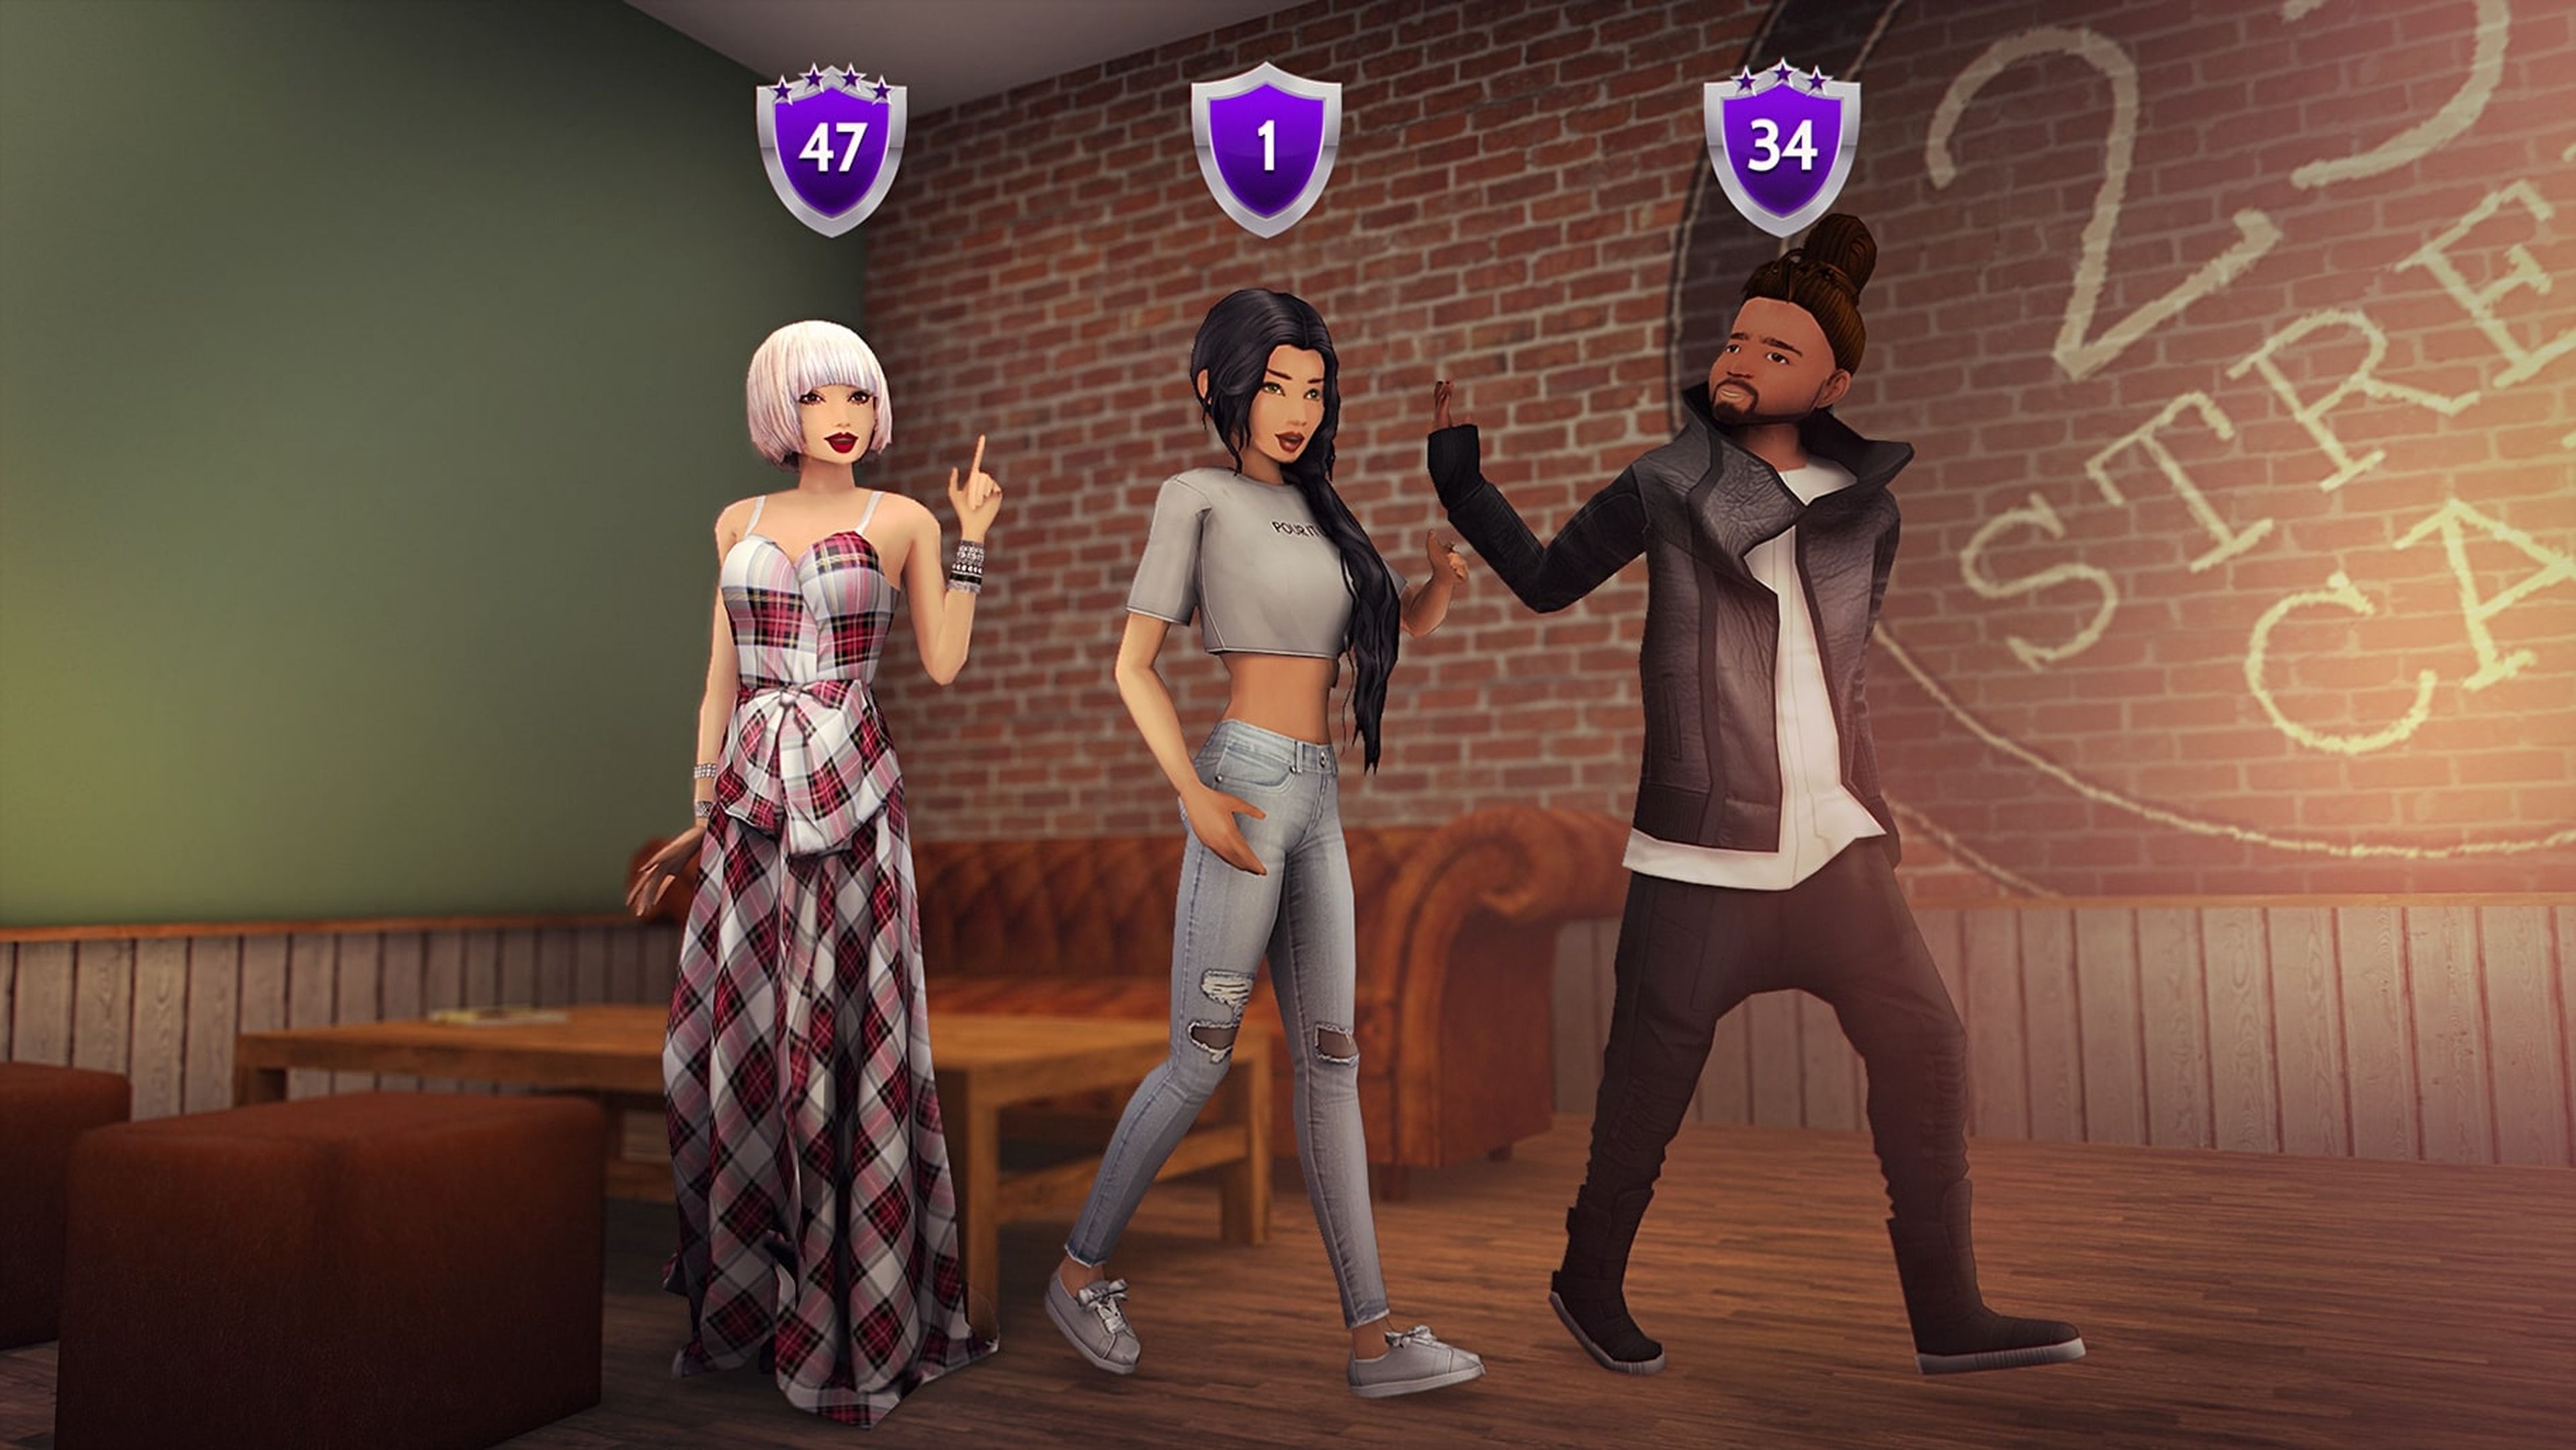 Videojuegos parecidos a Los Sims